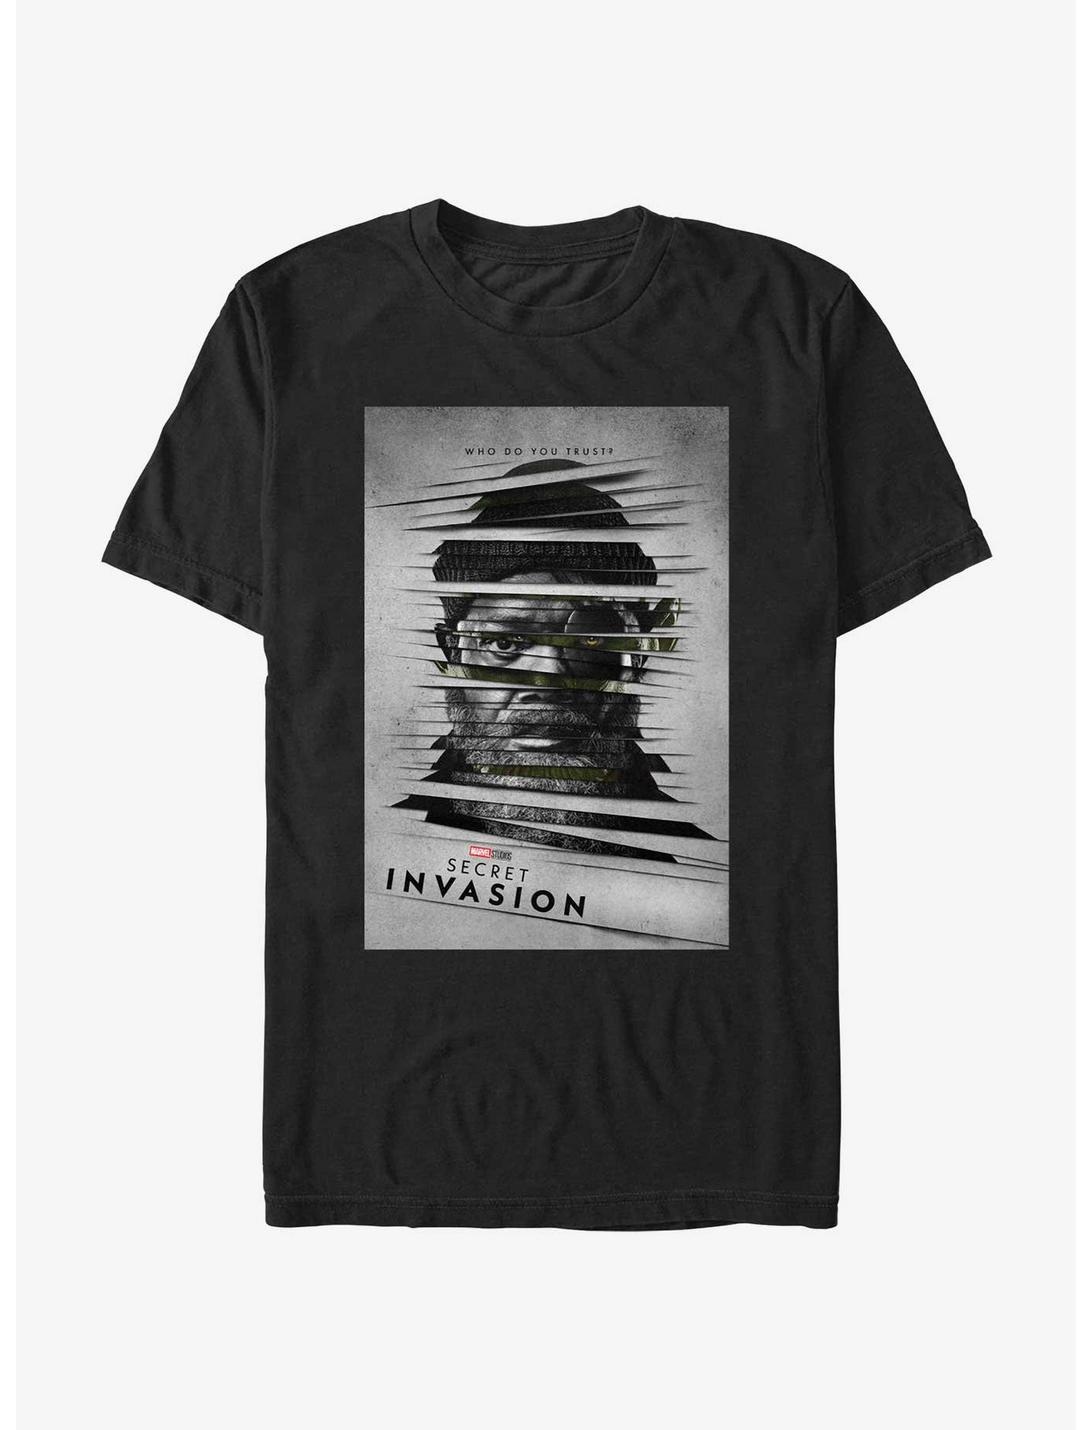 Marvel Secret Invasion Nick Fury Skrull Who Do You Trust Poster T-Shirt, BLACK, hi-res